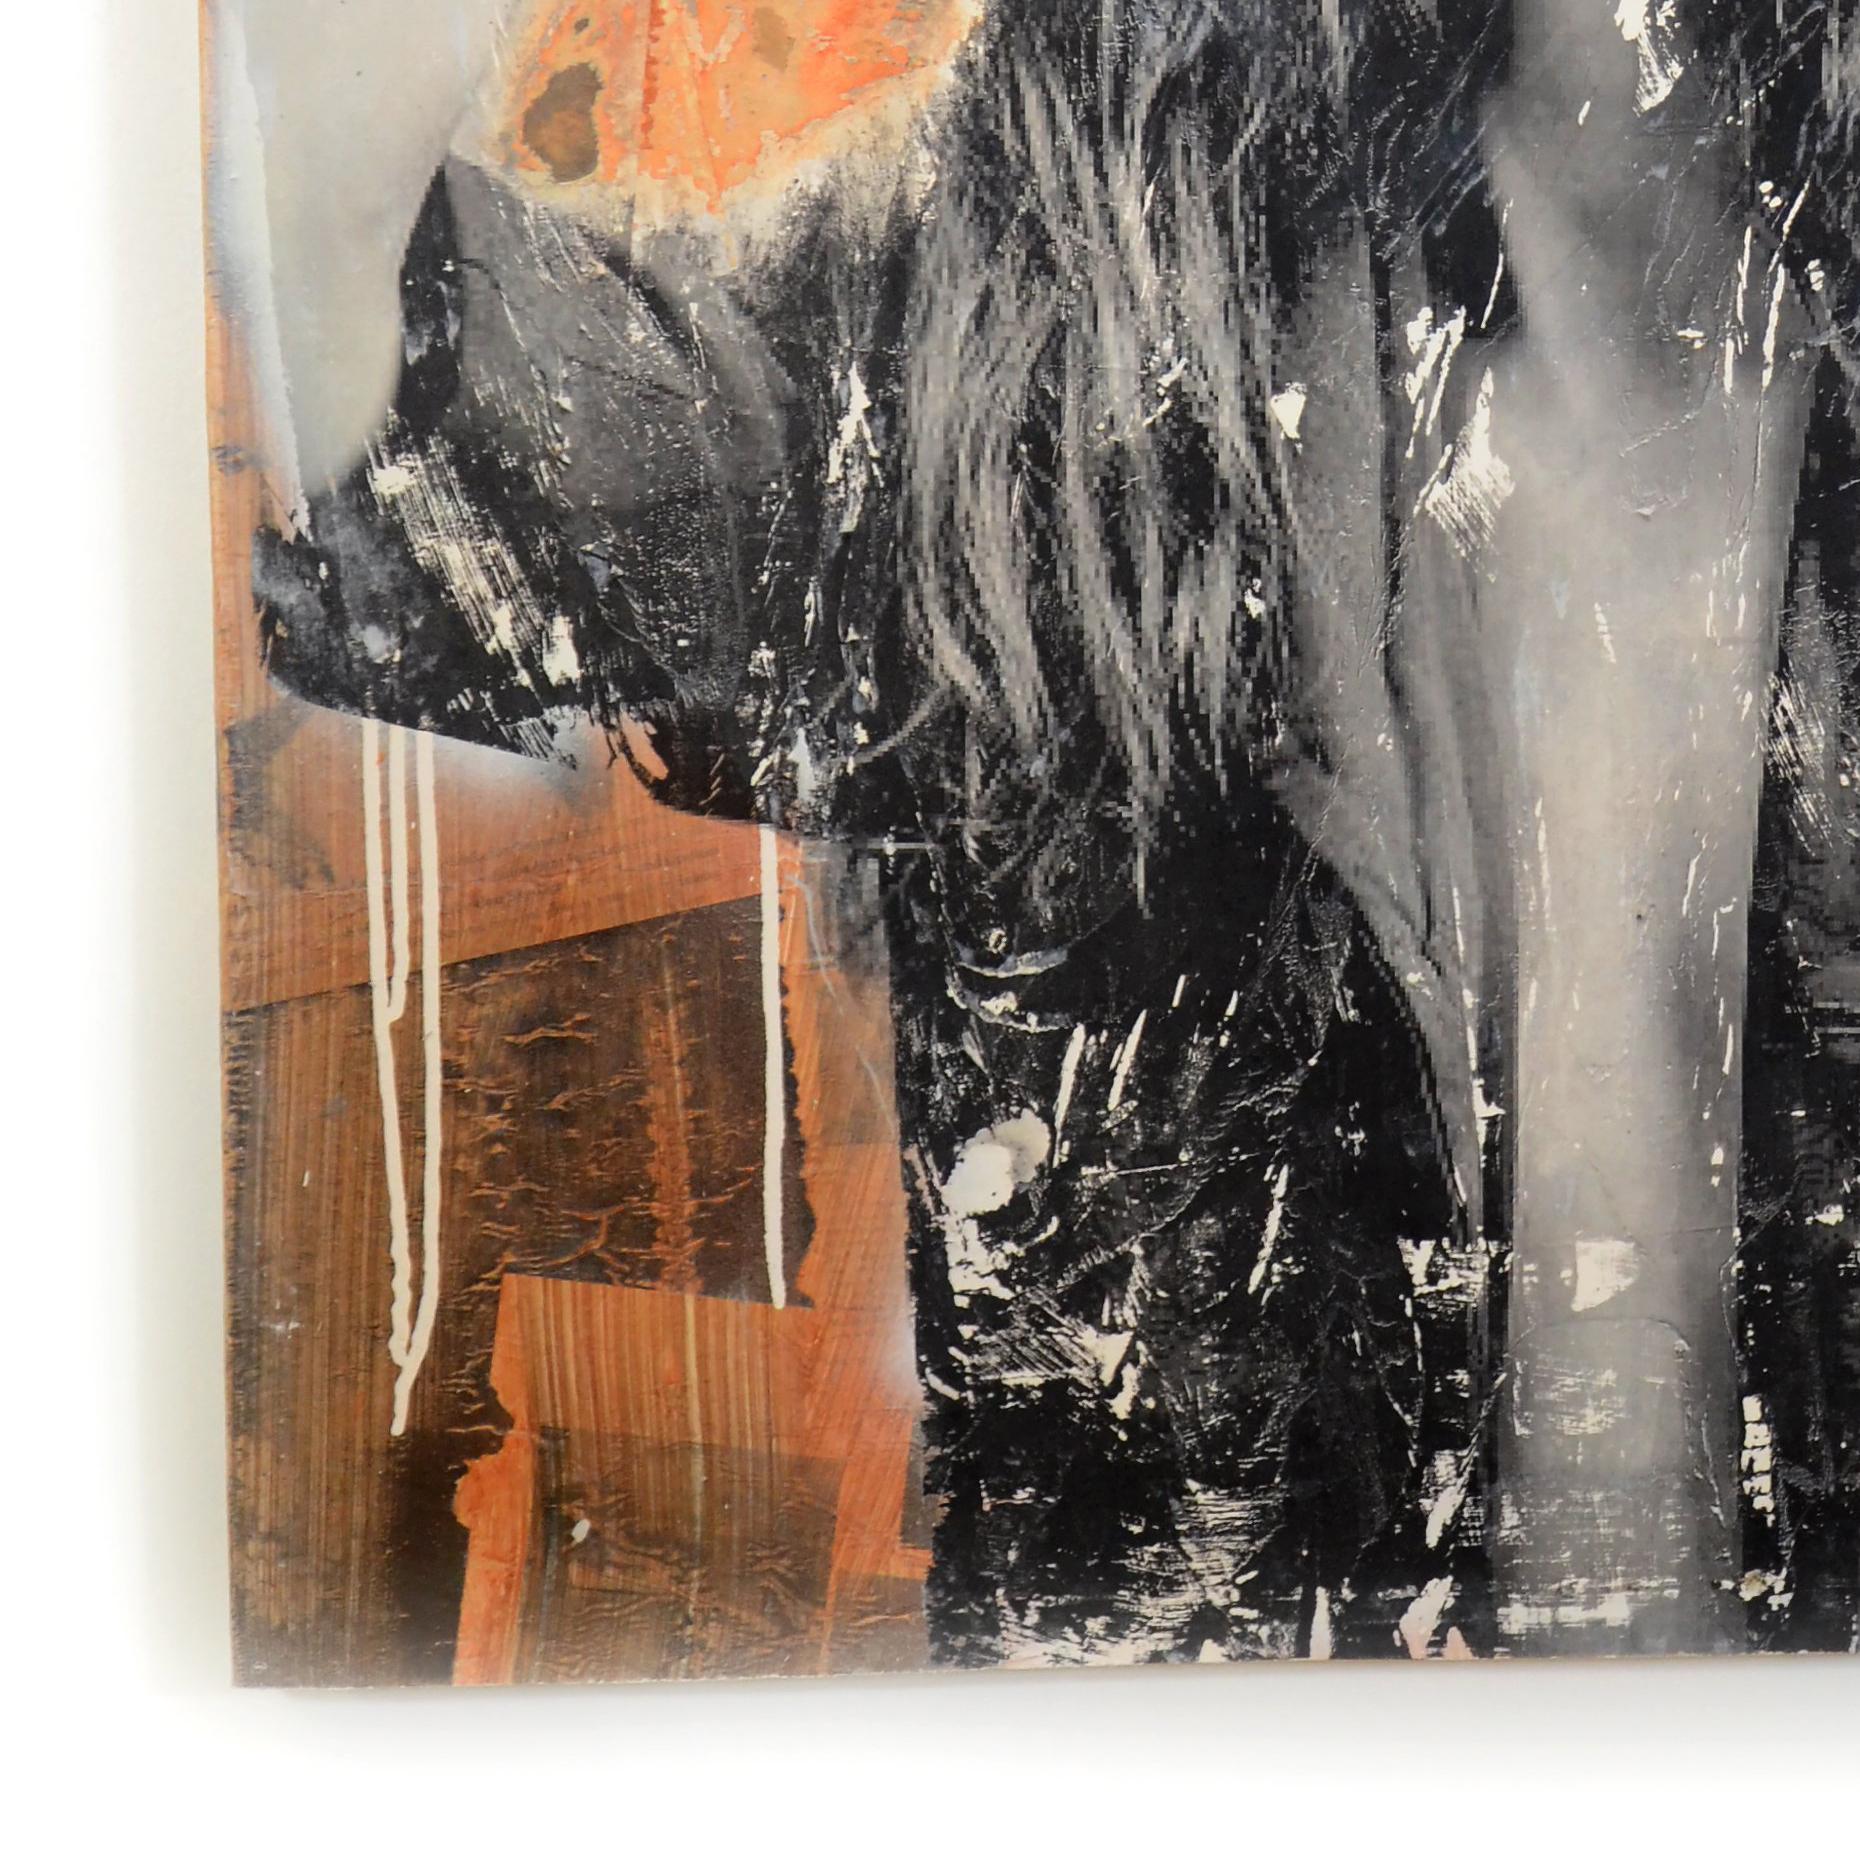 Mixed Media auf Holzplatte mit Epoxidharzbeschichtung.
Über den Künstler: 

Seek One ist ein aufstrebendes Talent, das in Galerien auf der ganzen Welt ausstellt und mit Warhol verglichen wird.  Das Medium ist Acryl, Aerosol und Mischtechnik.   Seine